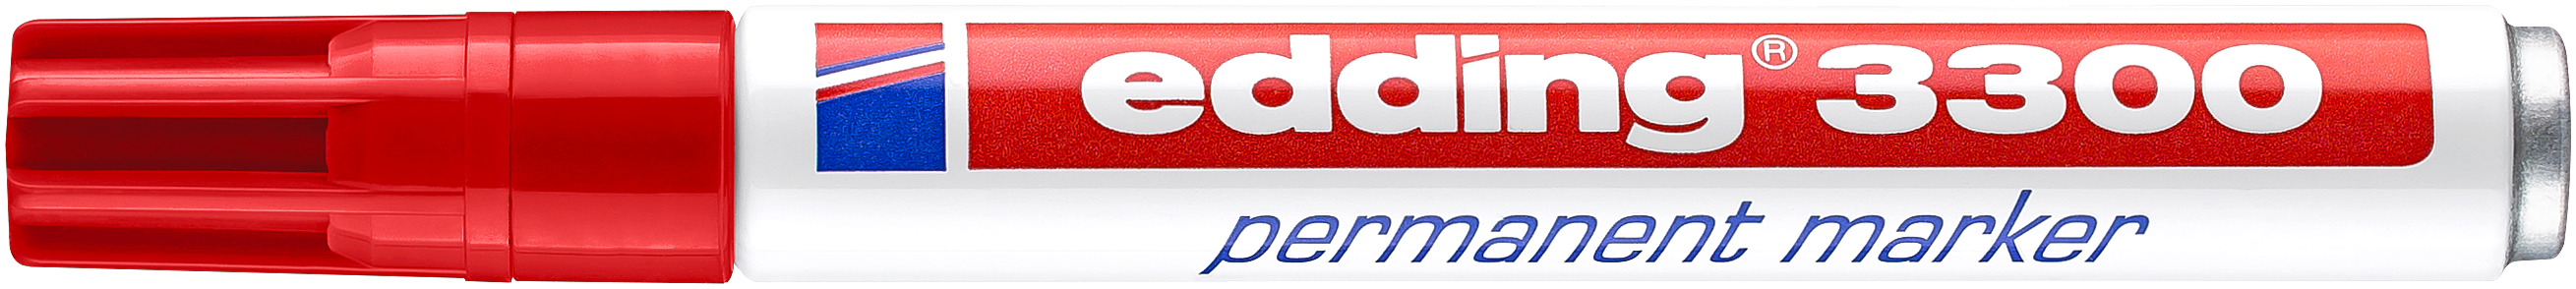 edding - Permanentmarker 3300